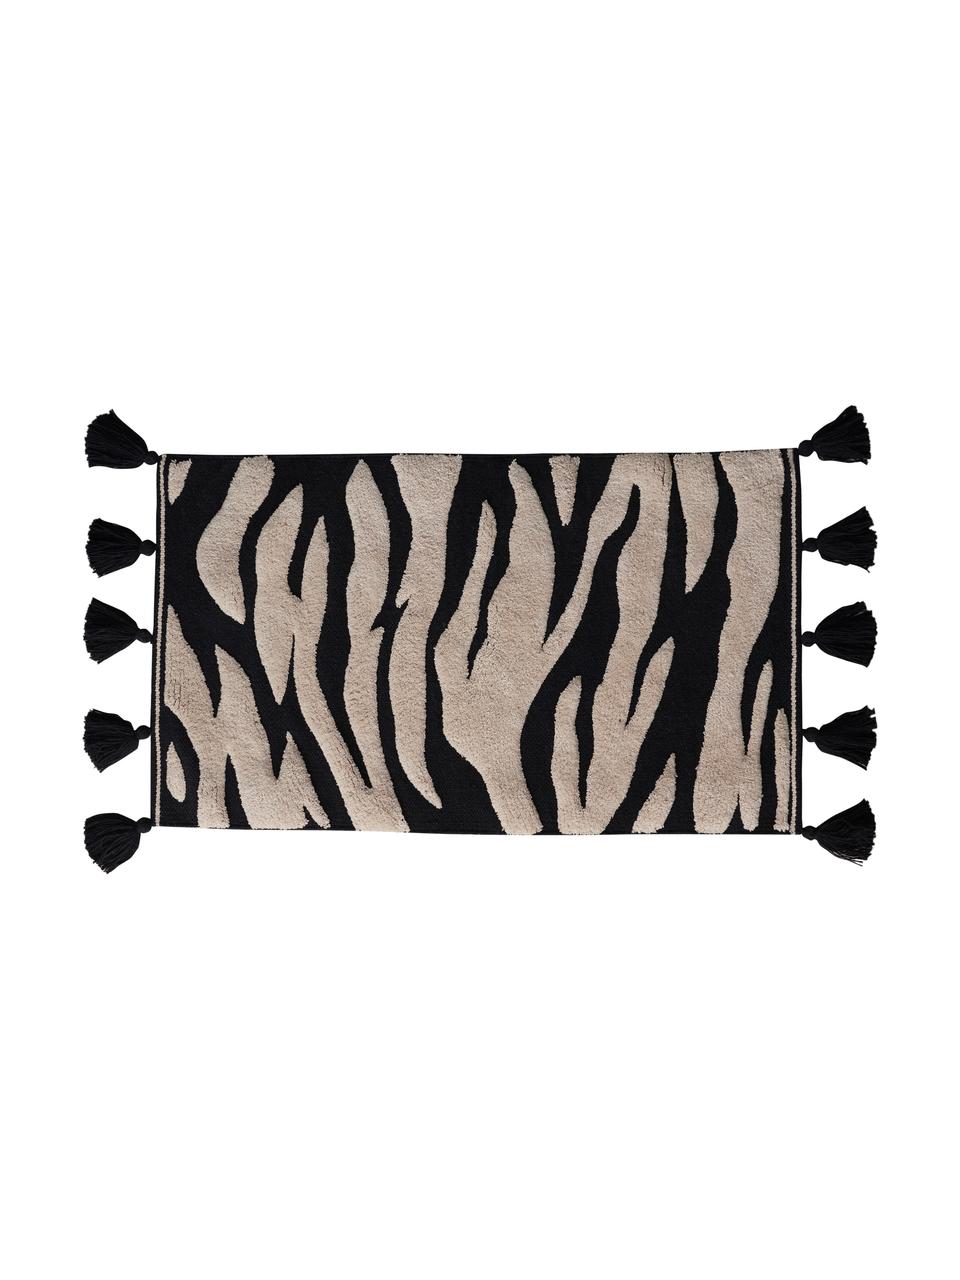 Badmat Lovely met zebra patroon en kwastjes, 100% katoen, Oeko-Tex®-gecertificeerd, Crèmewit, zwart, B 50 x L 80 cm